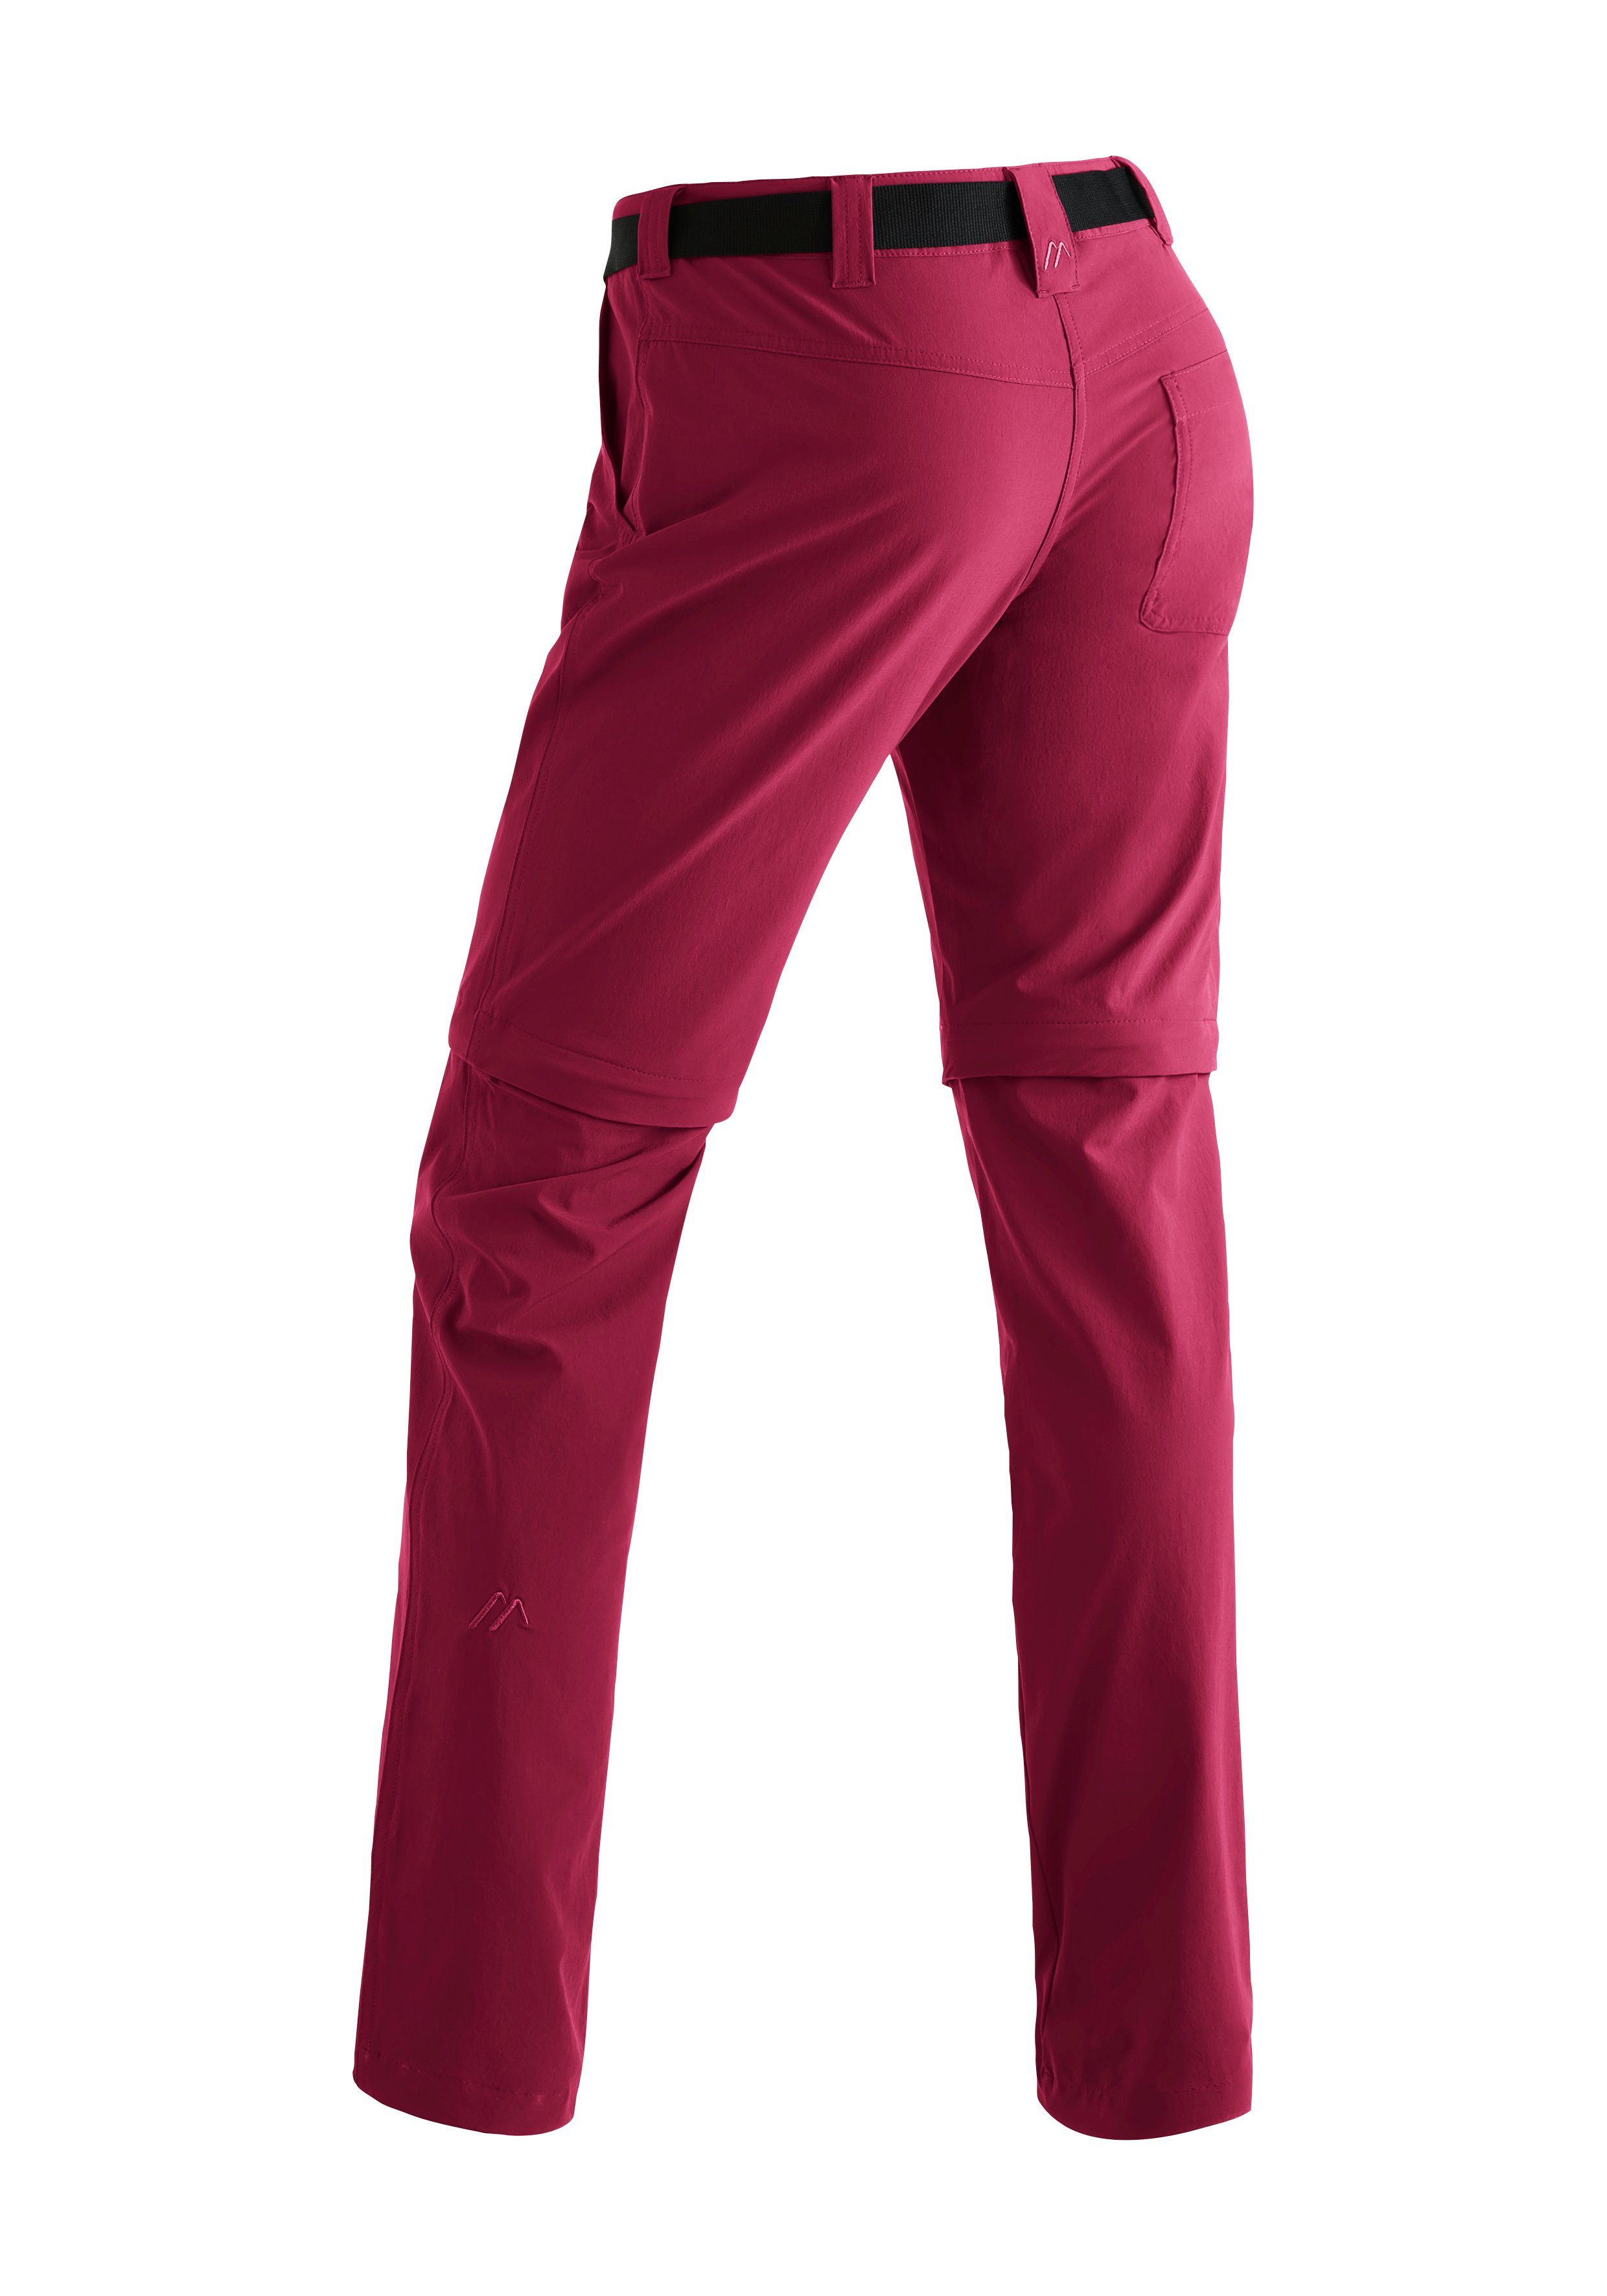 Damen Outdoor-Hose zip slim Funktionshose atmungsaktive Wanderhose, purpurrot zipp-off Inara Maier Sports